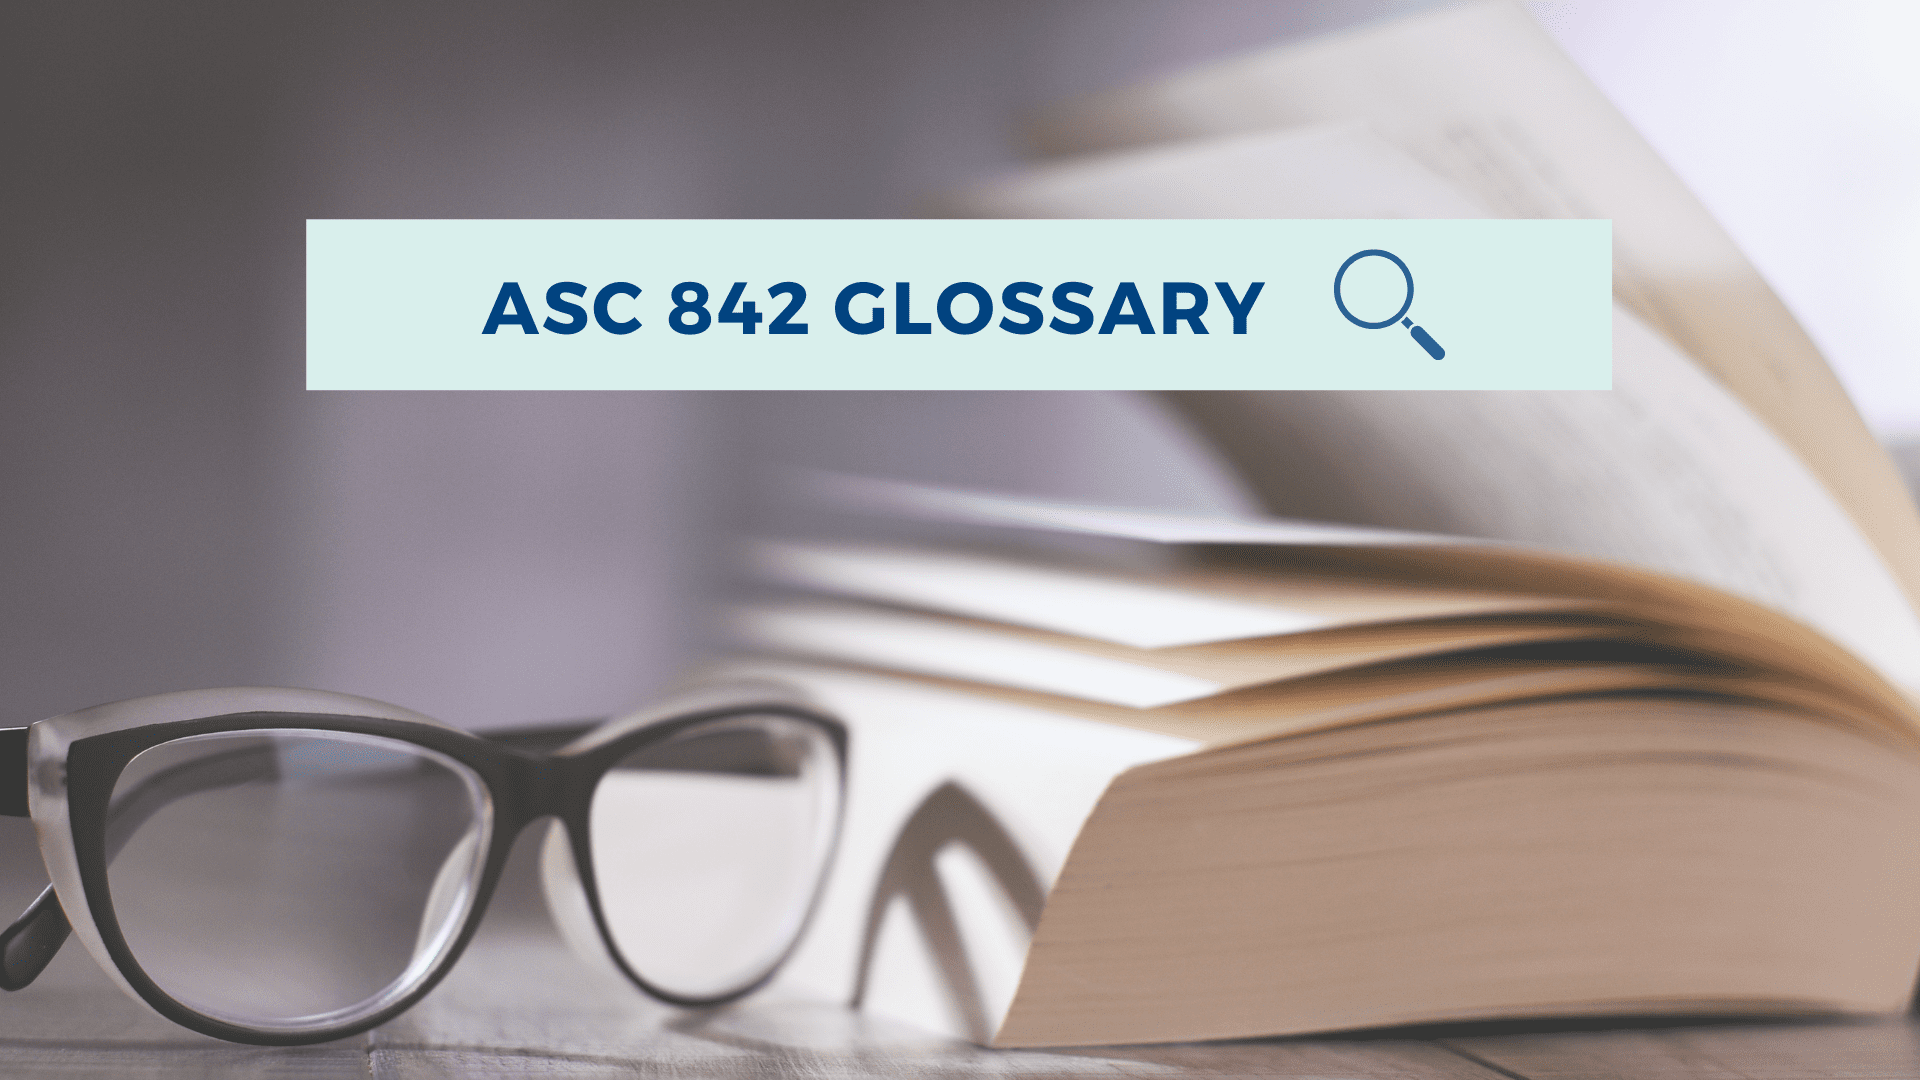 Occupier - ASC 842 Glossary